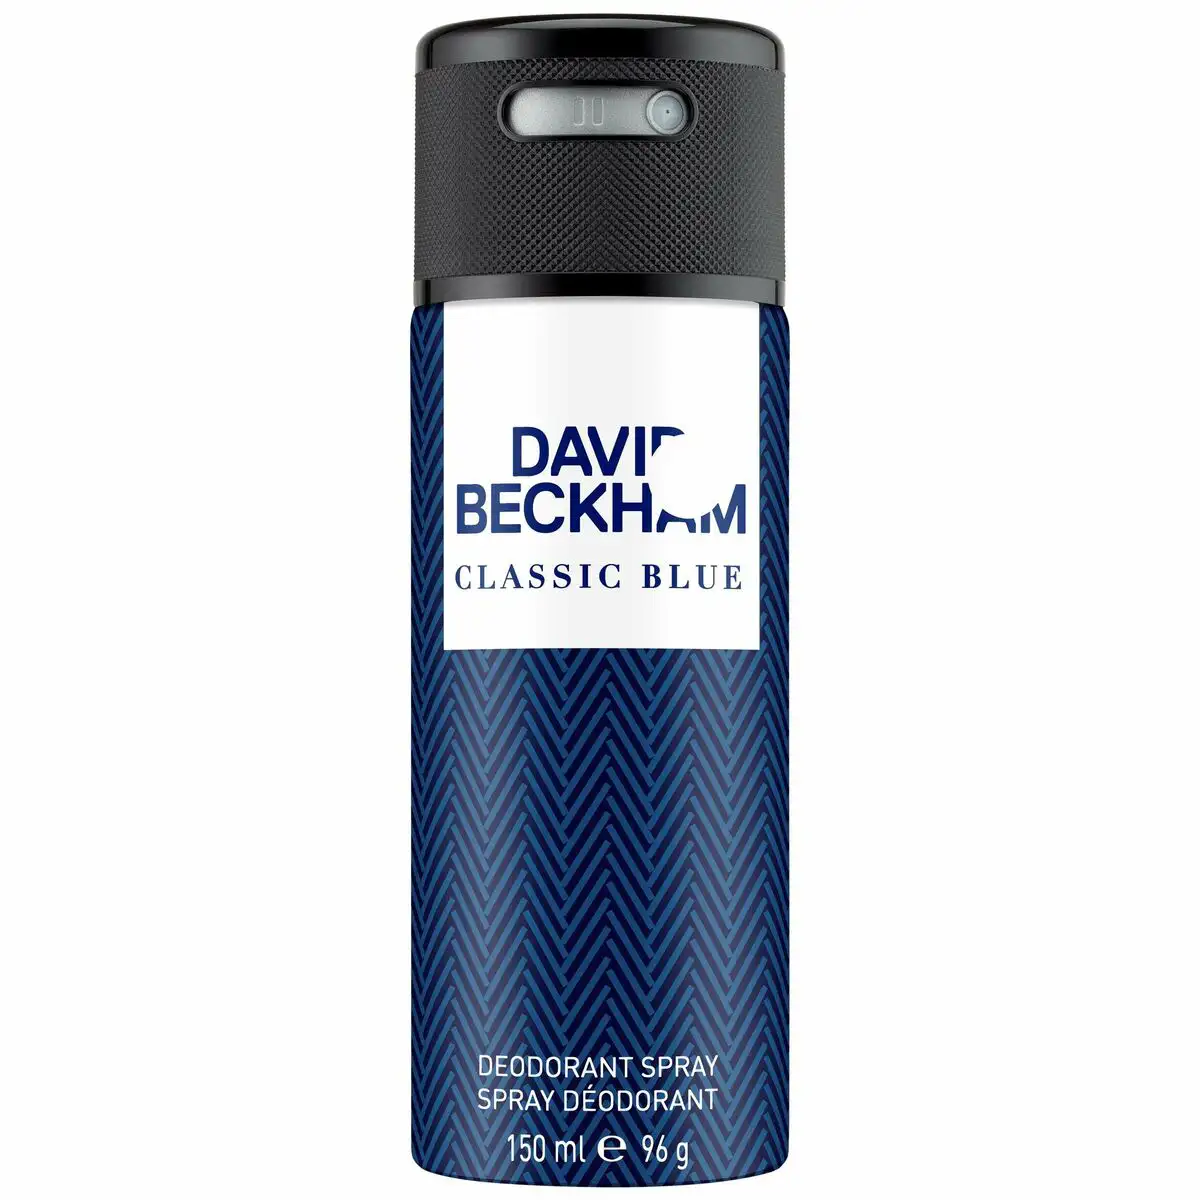 Spray deodorant david beckham classic blue 150 ml_7423. Bienvenue chez DIAYTAR SENEGAL - Où Chaque Produit a son Âme. Découvrez notre gamme et choisissez des articles qui résonnent avec votre personnalité et vos valeurs.